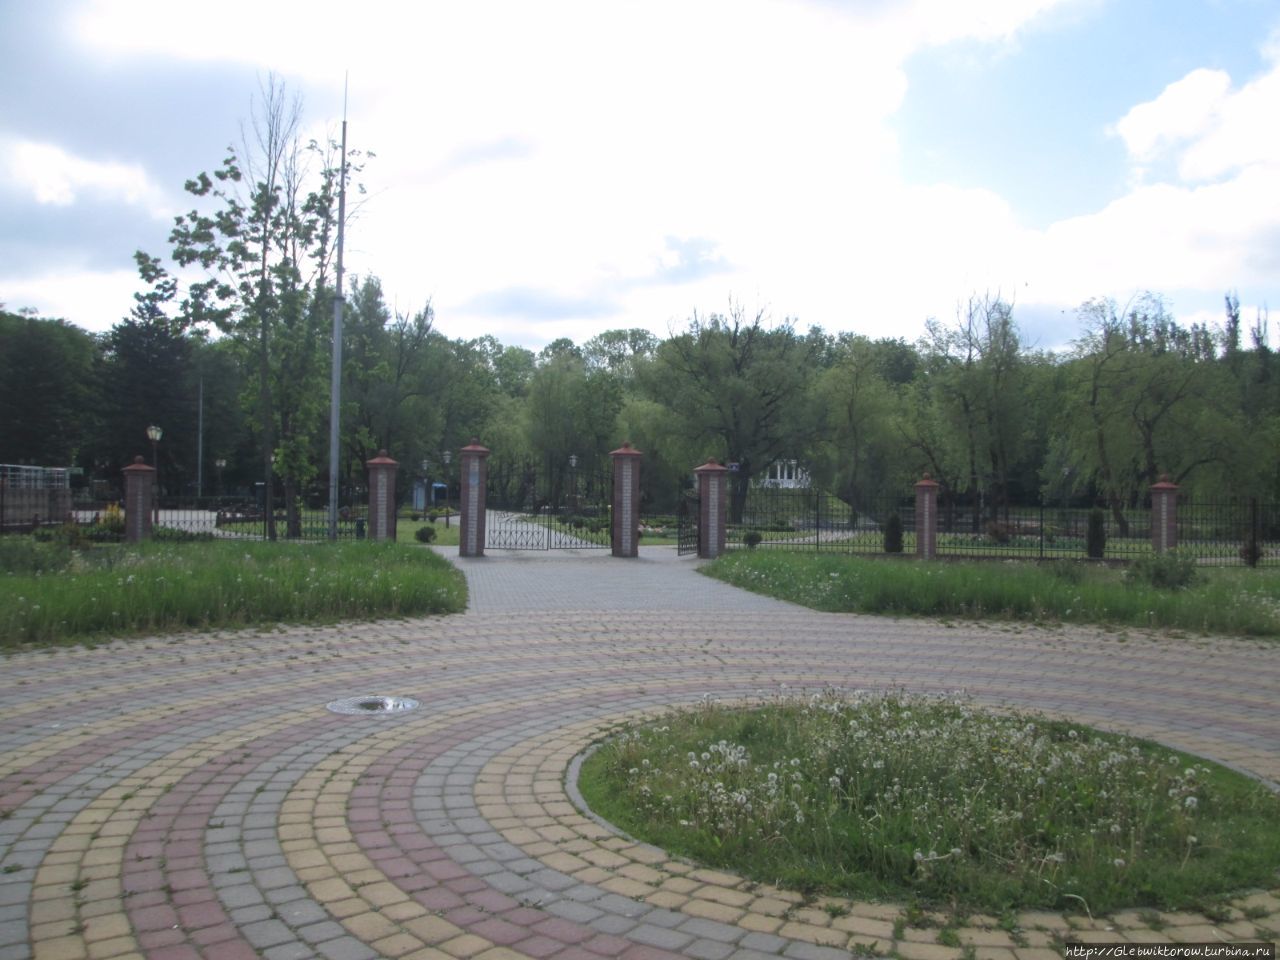 Парк Суворова / The Park Suvorov